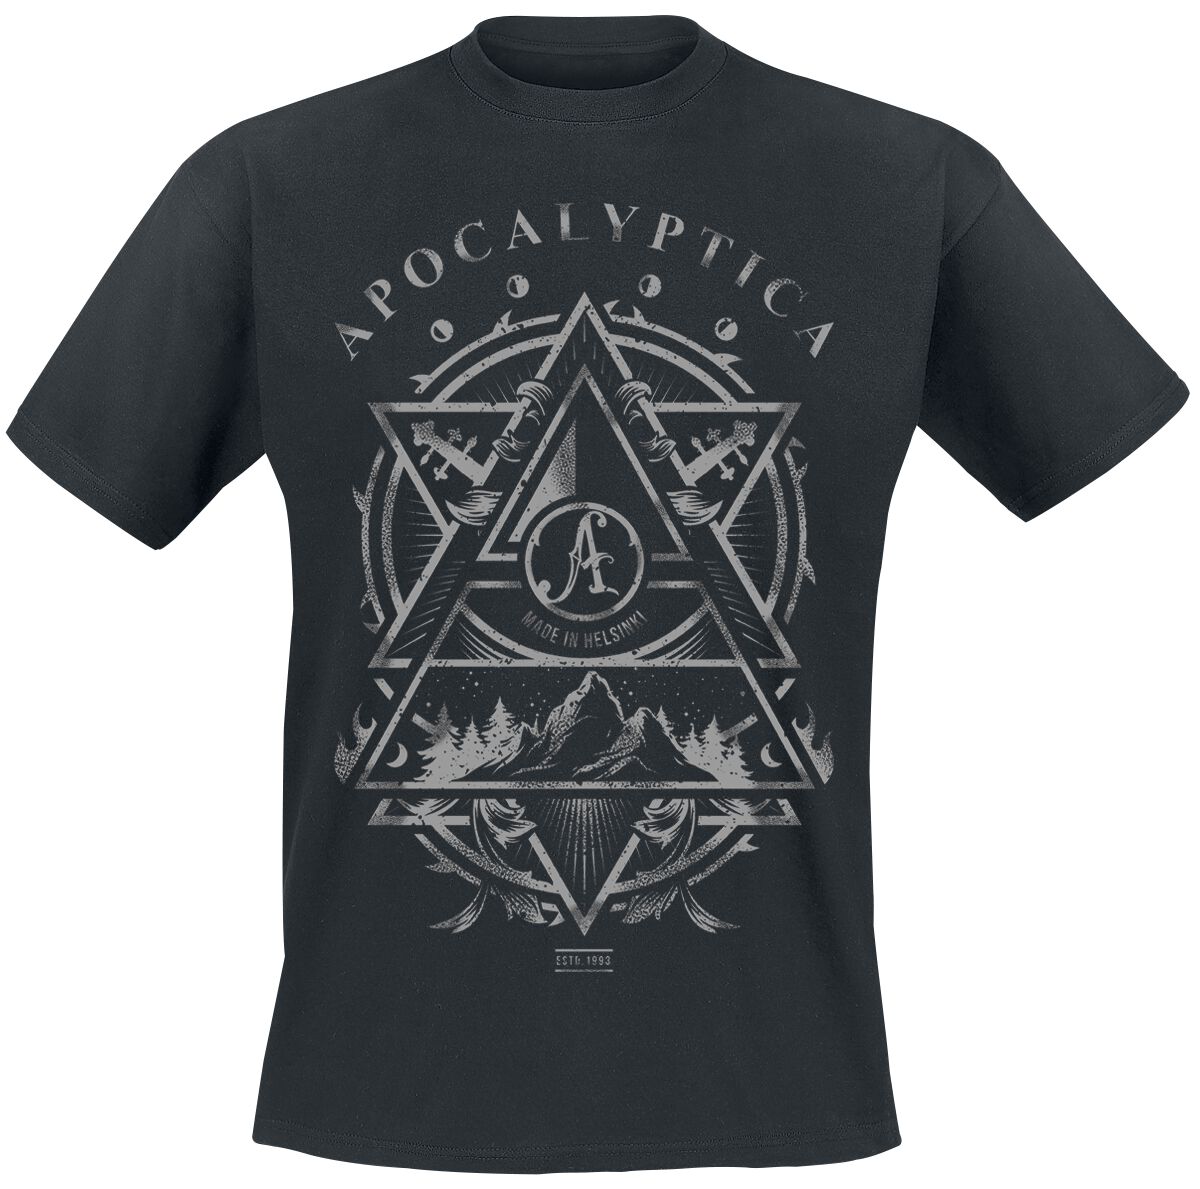 Apocalyptica T-Shirt - Made In Helsinki - S bis XXL - für Männer - Größe L - schwarz  - Lizenziertes Merchandise!